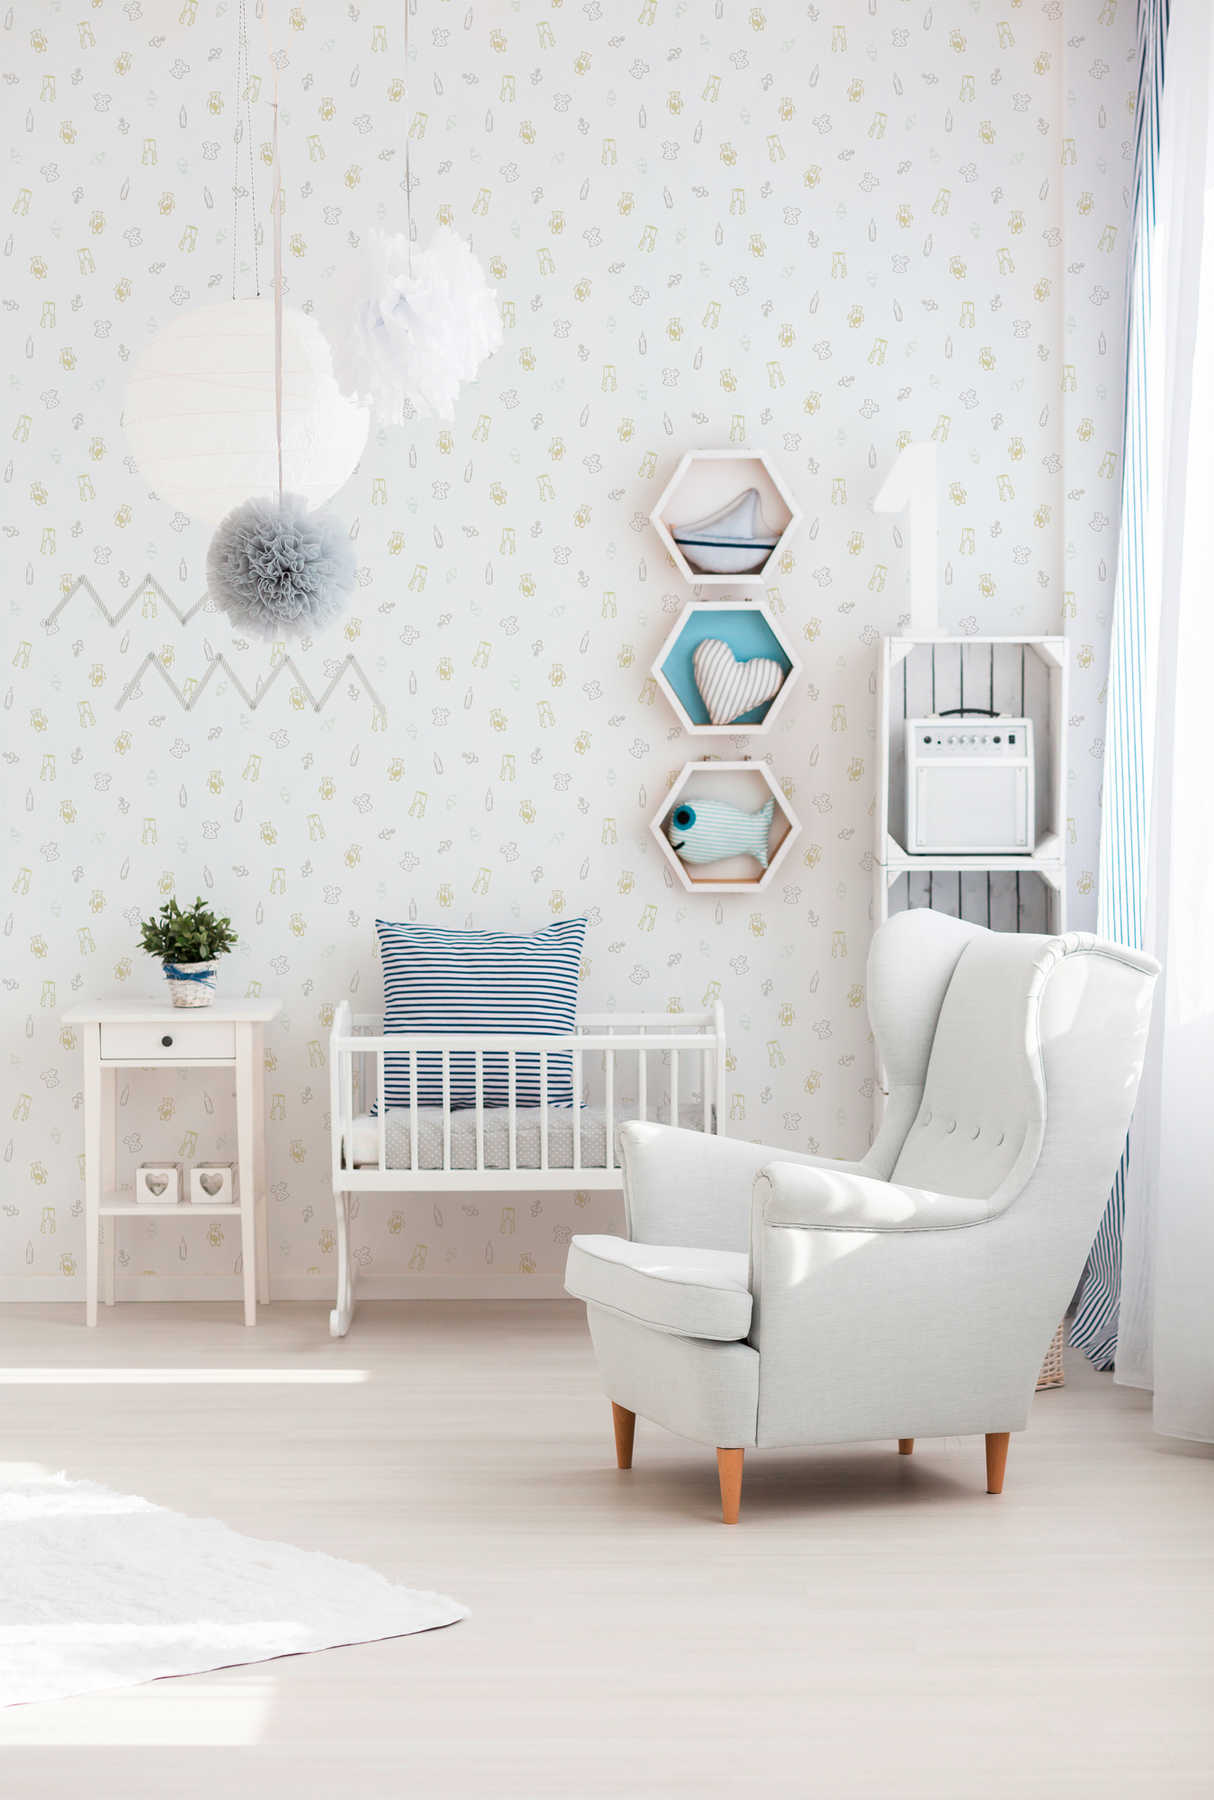             Tapete Babyzimmer mit süßem Muster – Metallic, Weiß
        